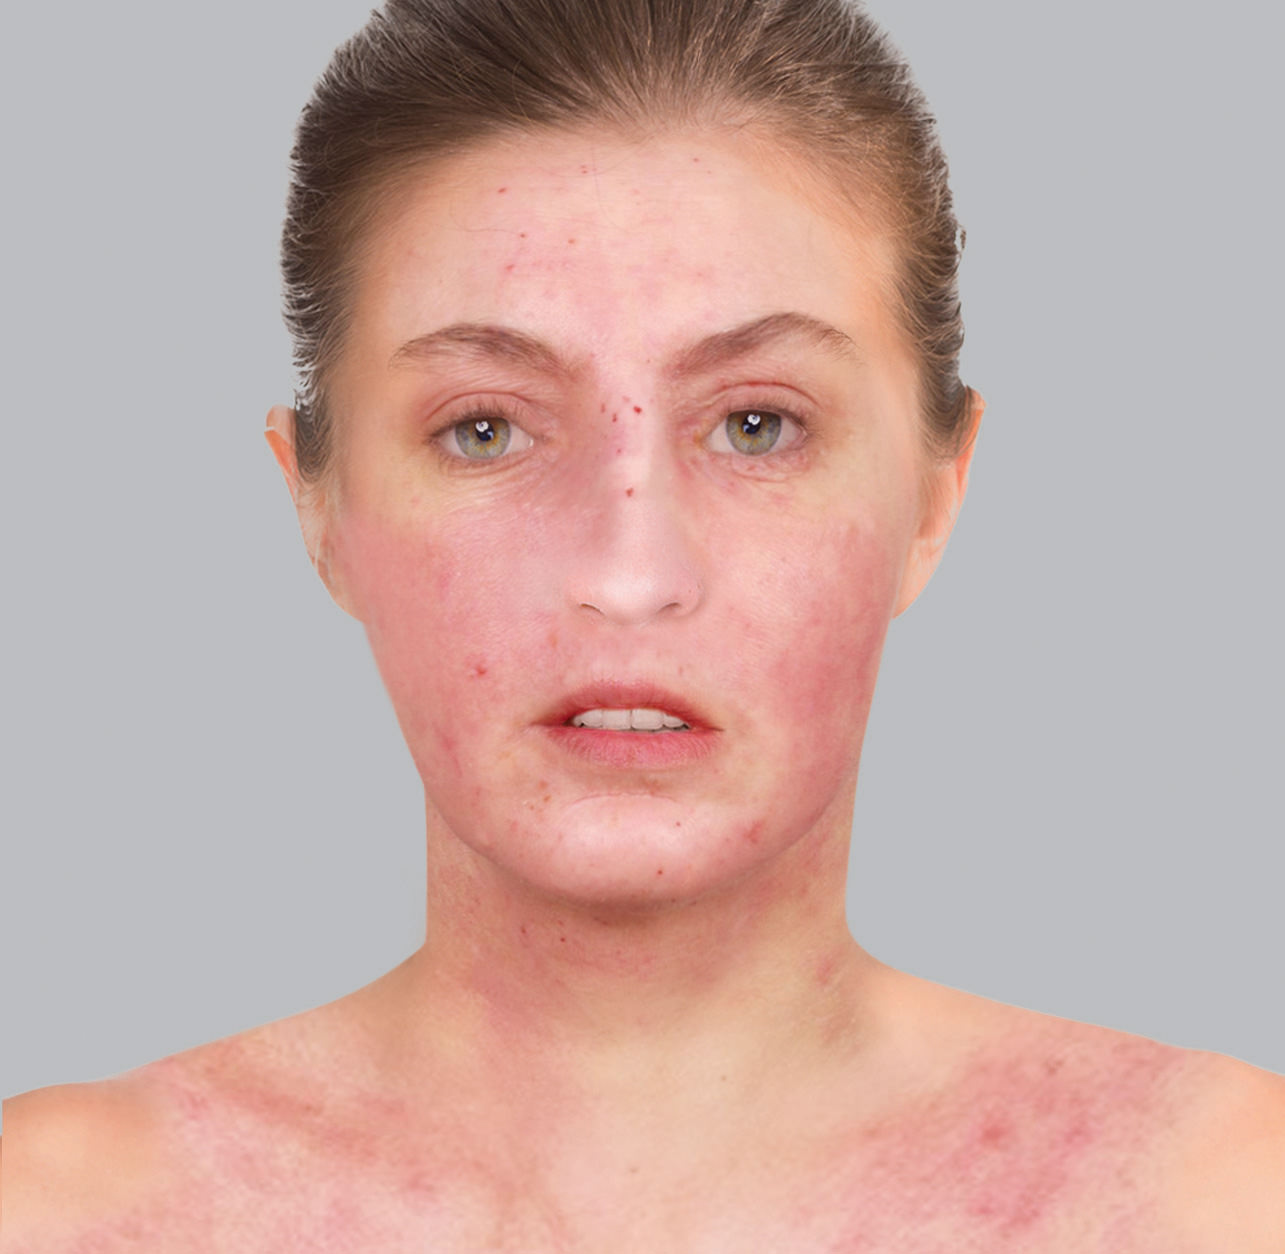 Symptômes de l'eczéma atopique : plaques rouges ou érythème